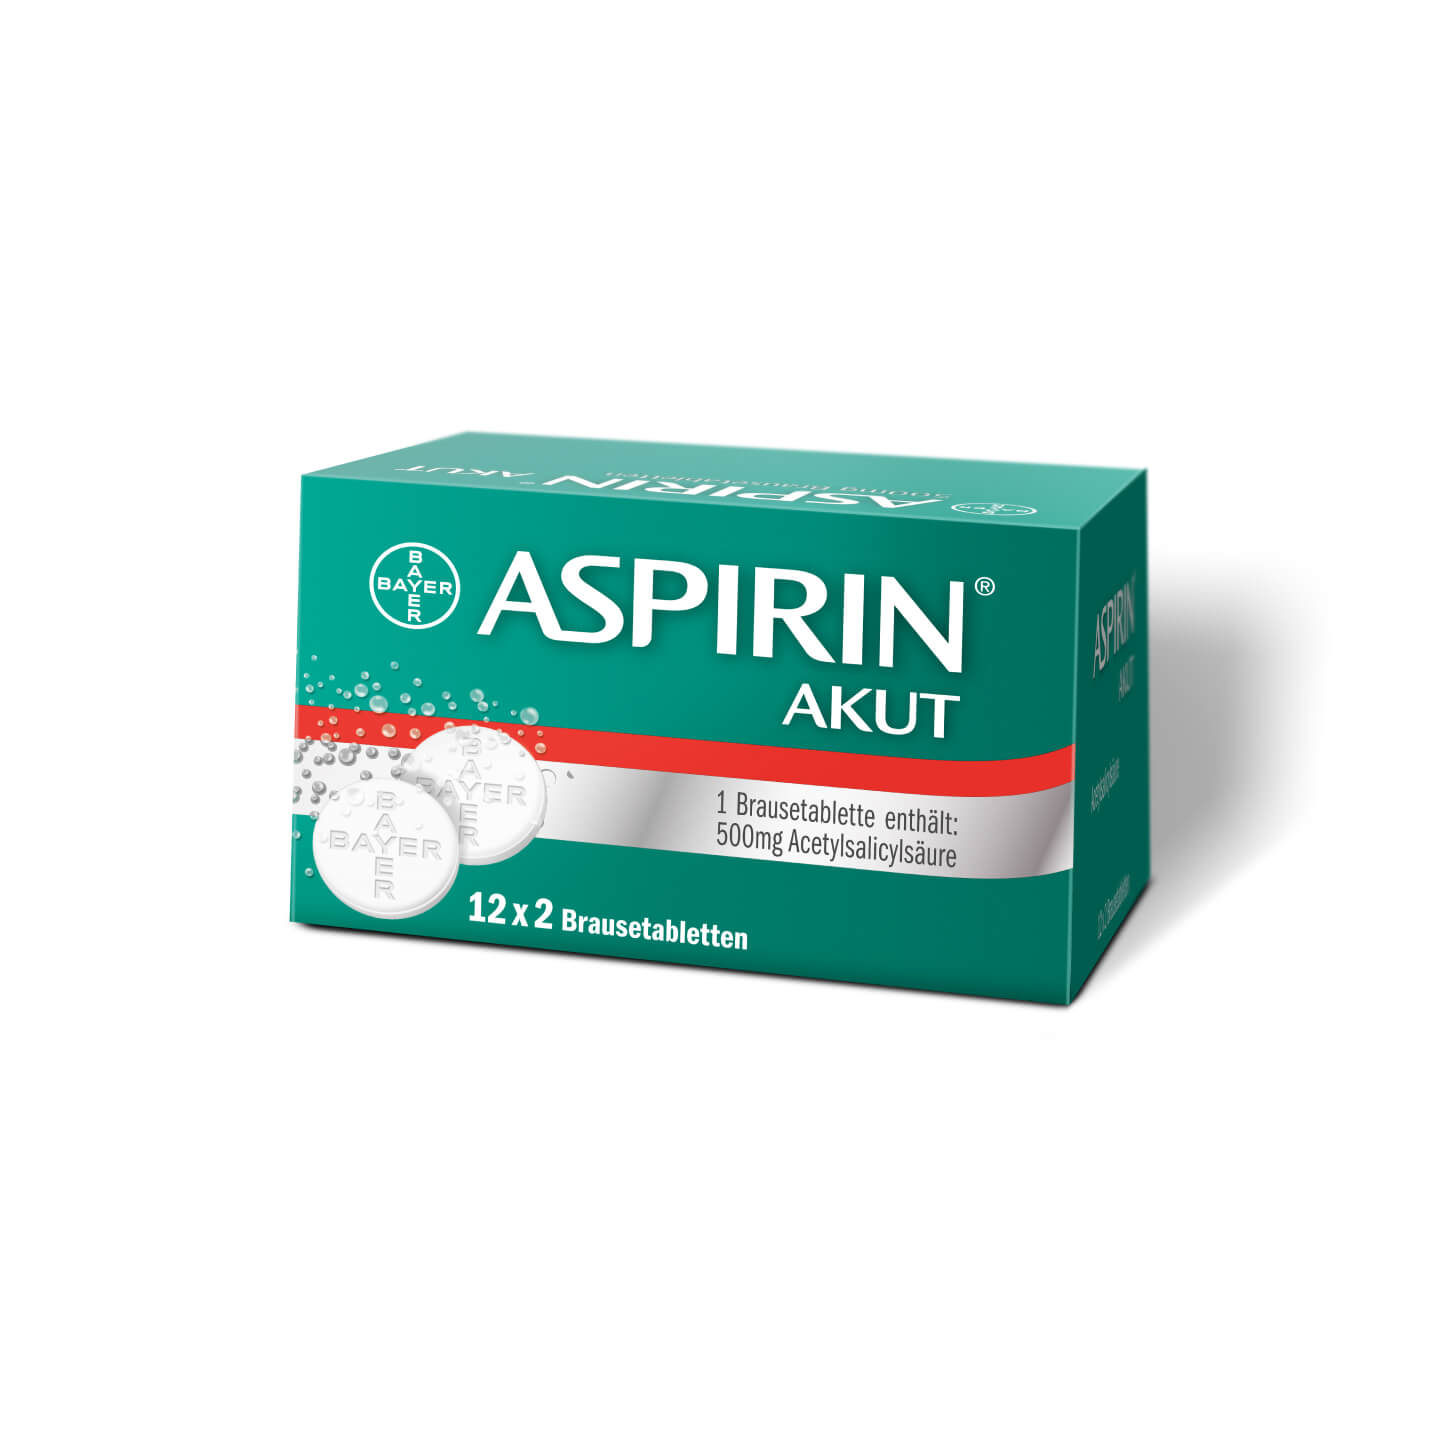 Aspirin® Akut